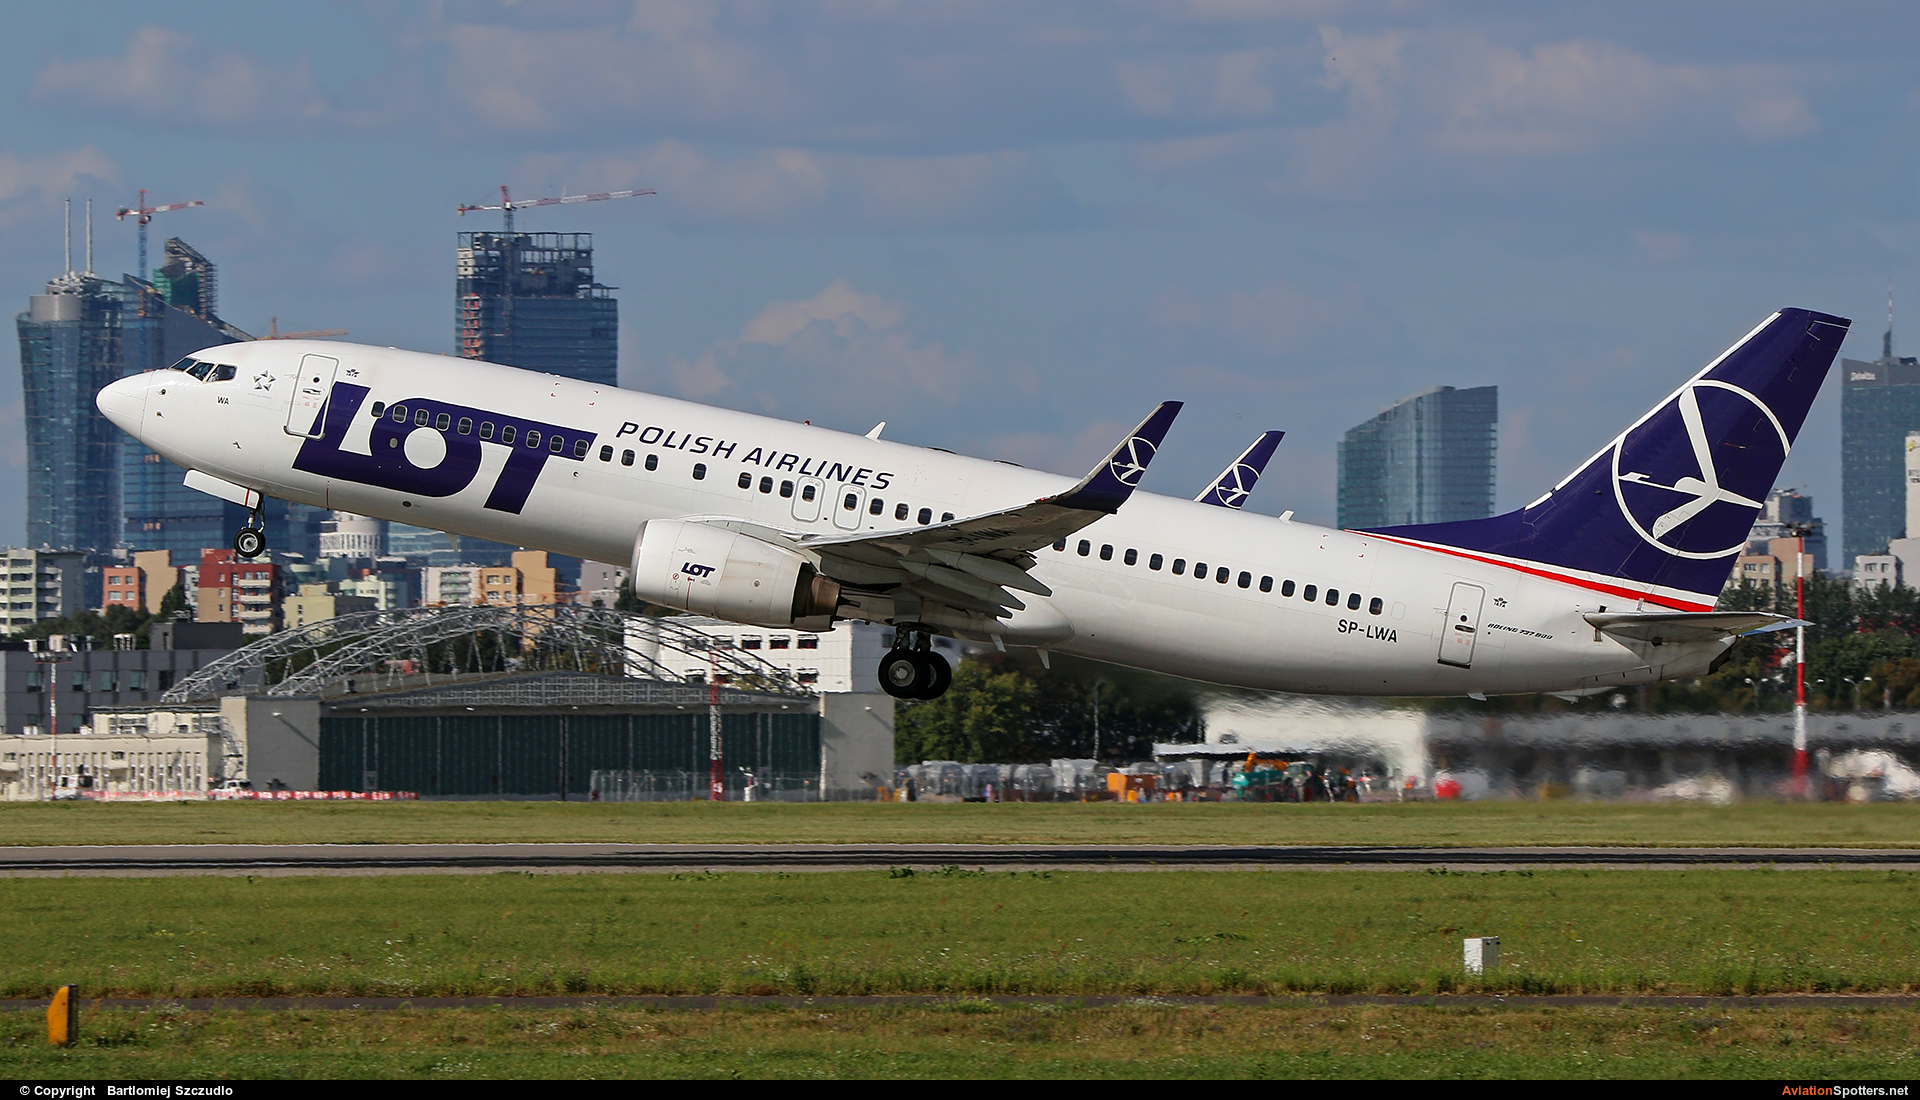 LOT - Polish Airlines  -  737-800  (SP-LWA) By Bartlomiej Szczudlo  (BartekSzczudlo)